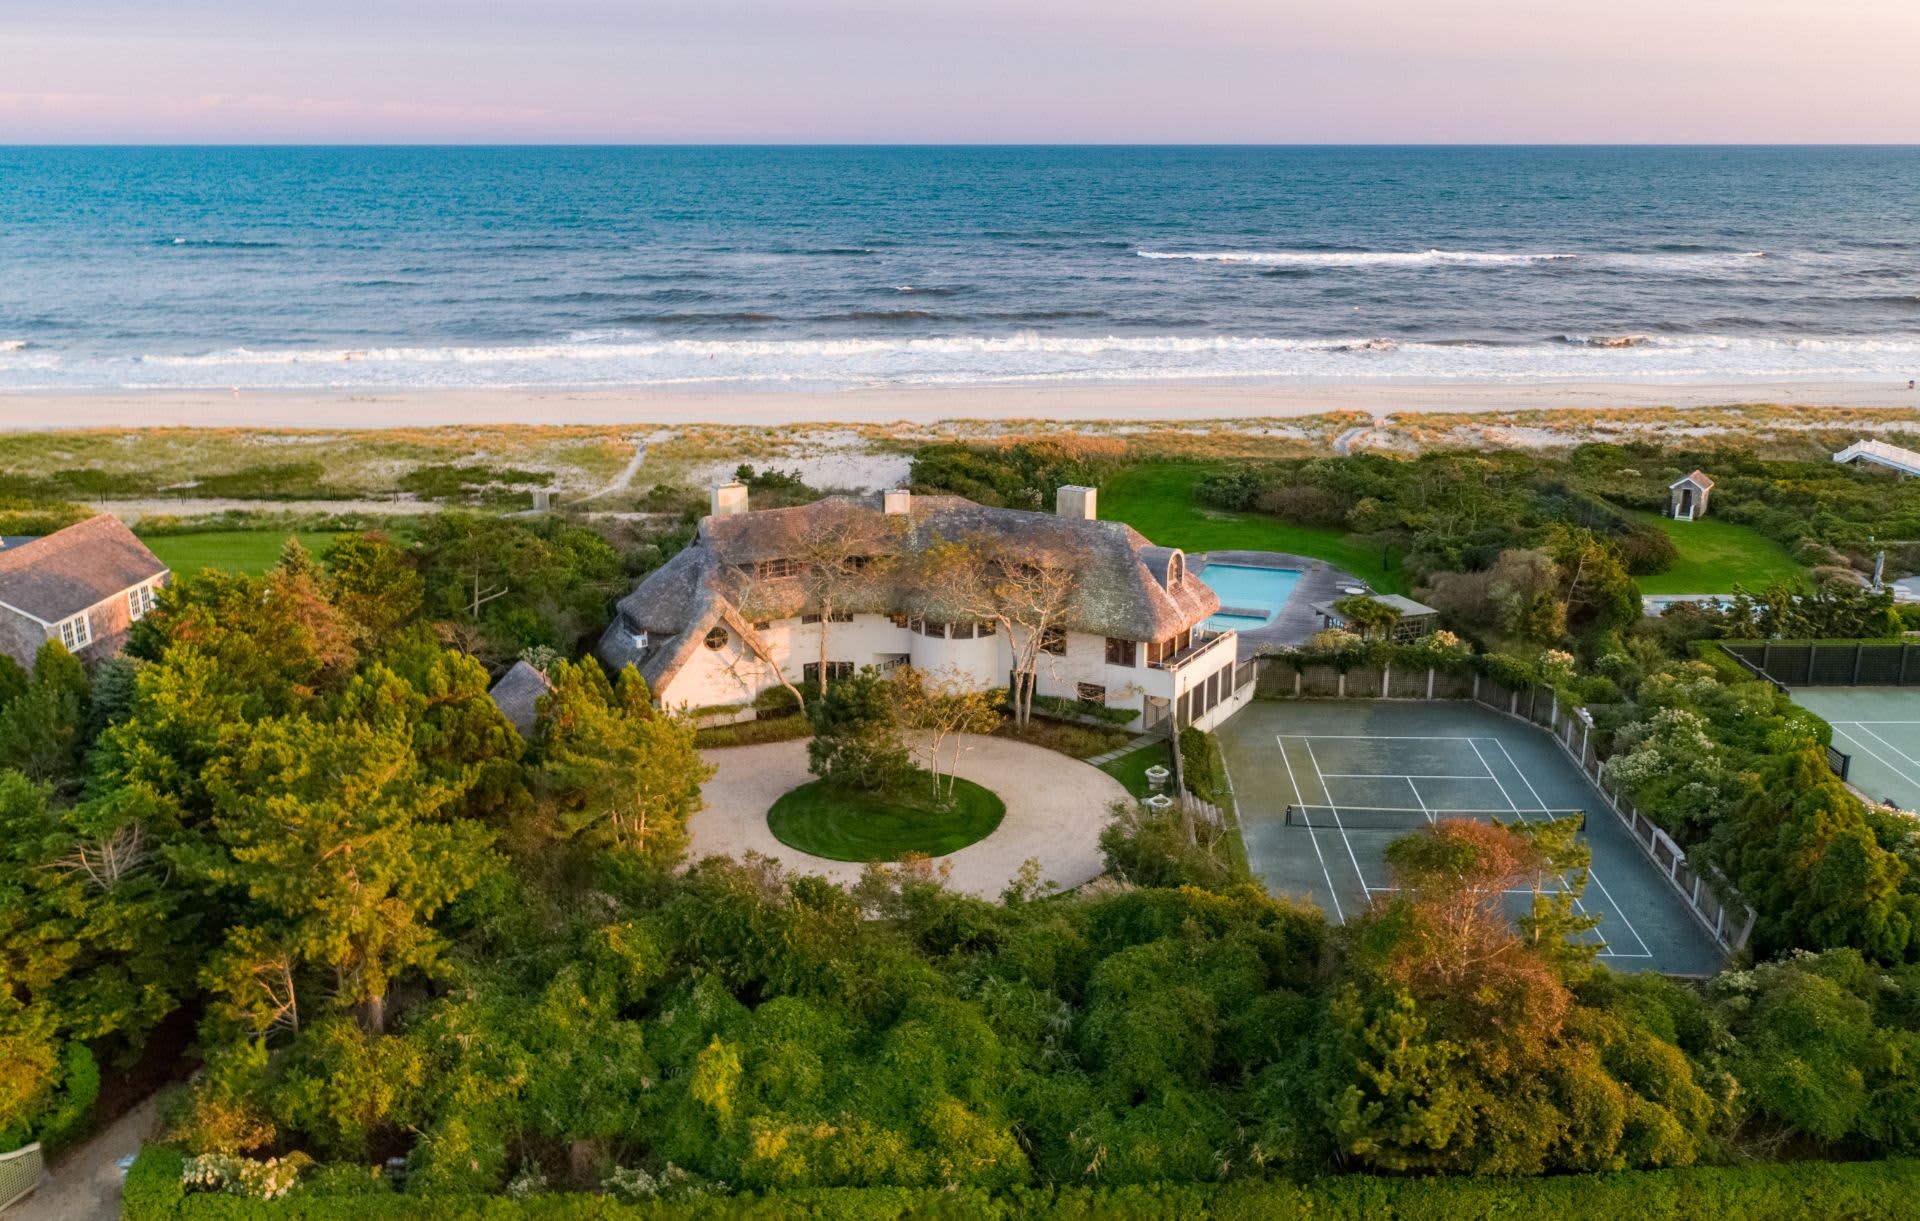 Photos: Inside multimillion-dollar Hamptons beach house for sale